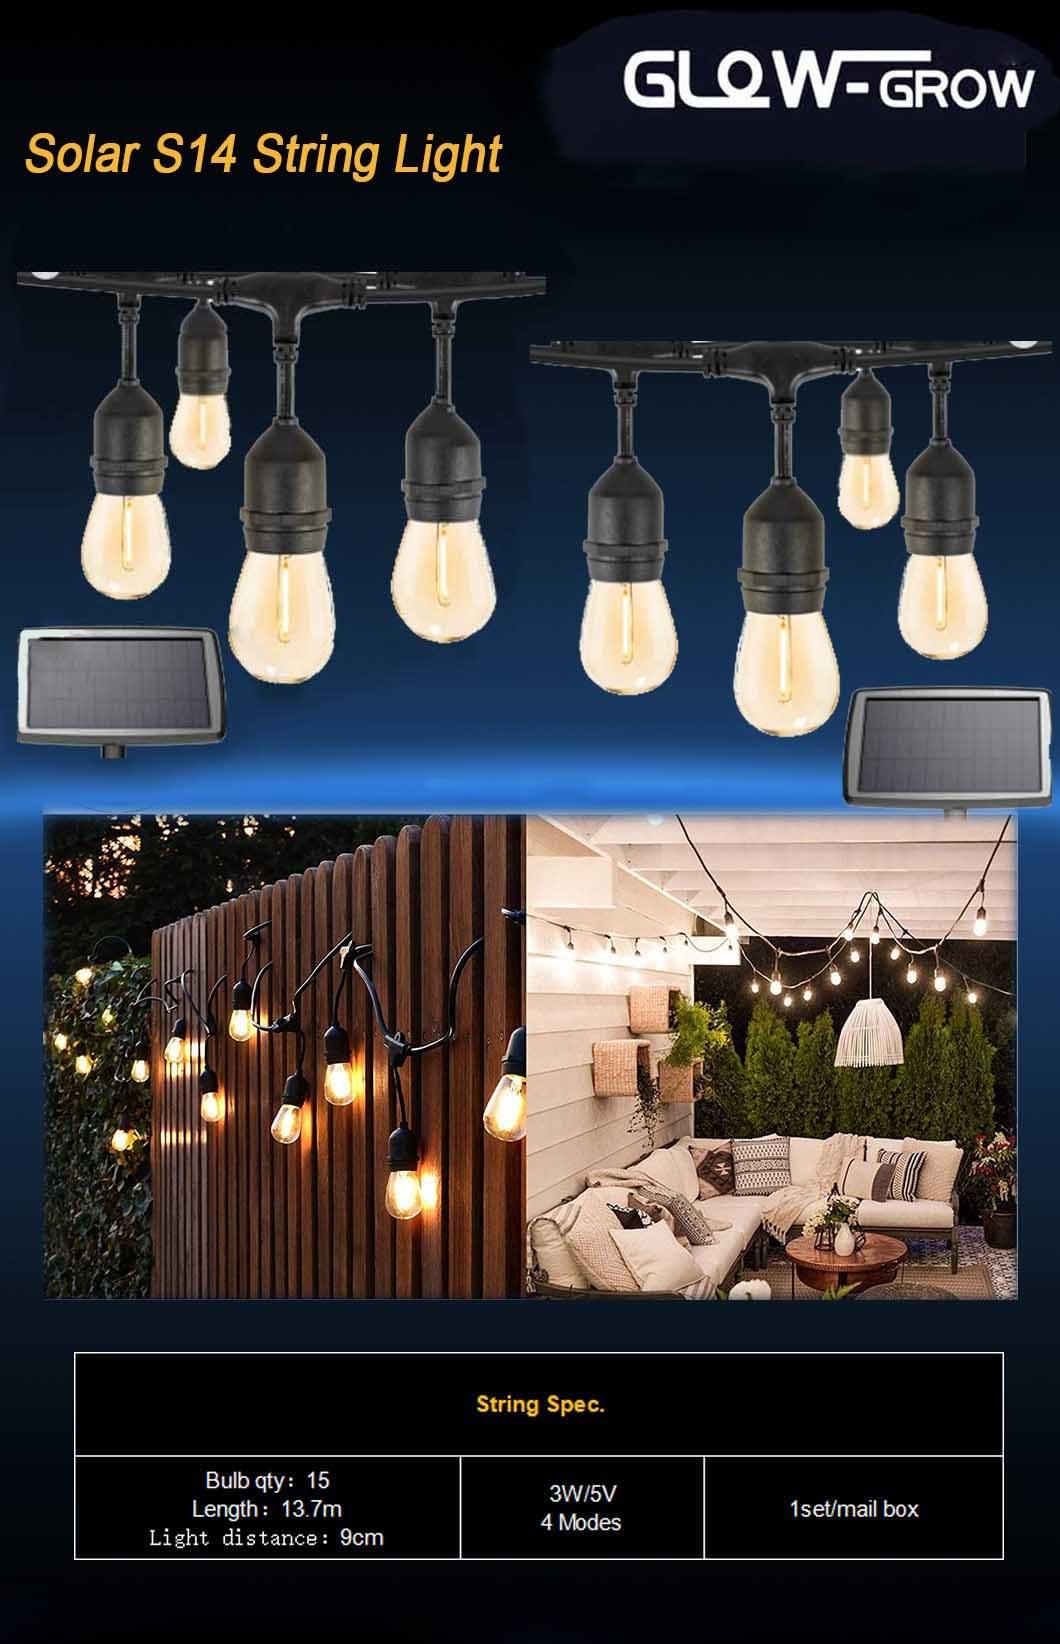 Flexible LED Hanging Solar Bulb String Light for Garden Decoration